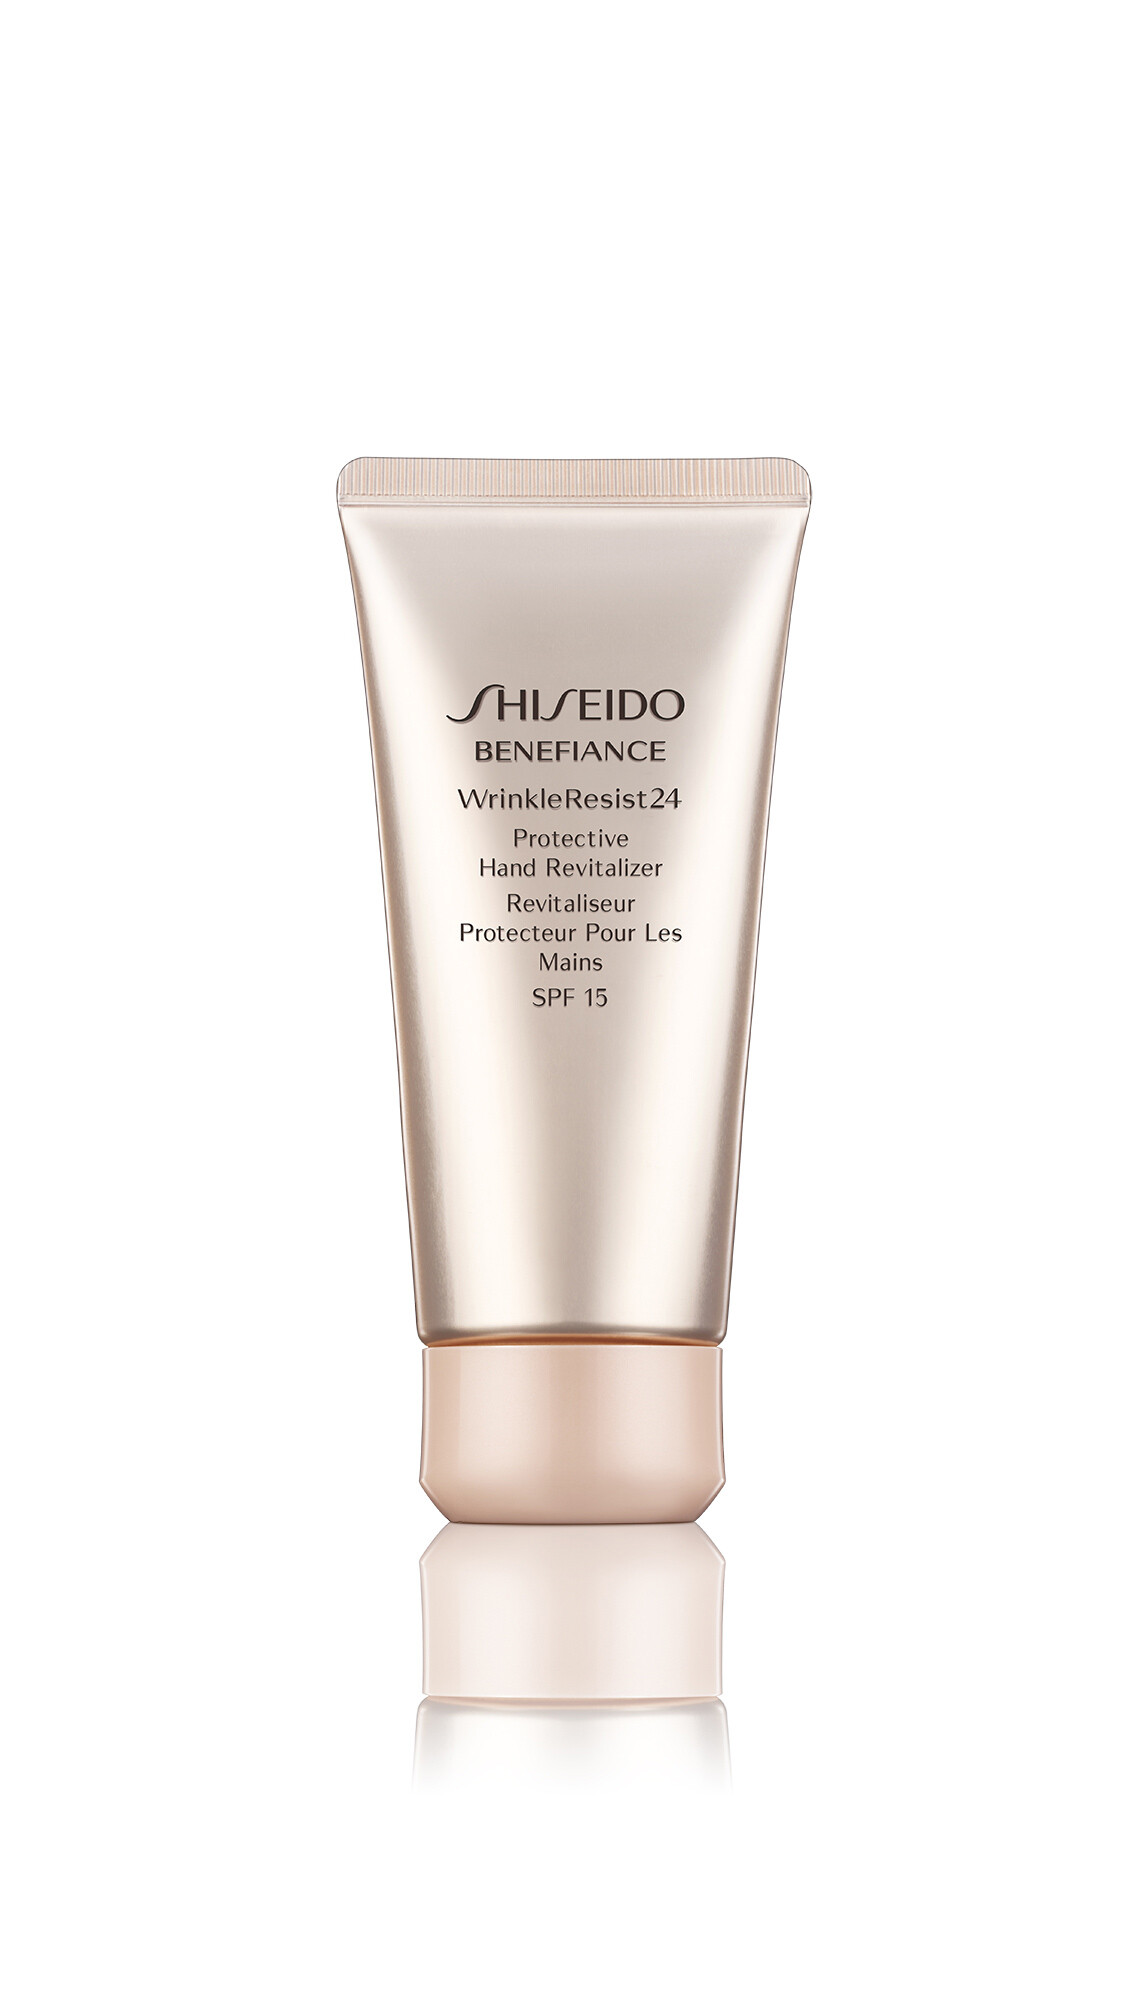 Handcreme Shiseido Benefiance WrinkleResist24 Protective Hand Revitalizer 75ml kaufen